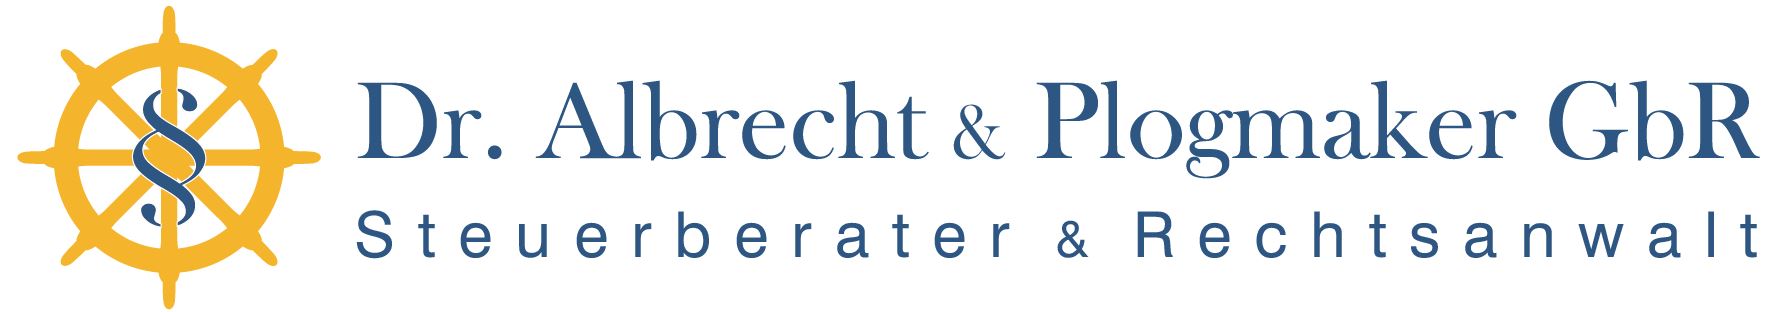 Albrecht & Plogmaker - Steuerberater und Rechtsanwalt in Berlin